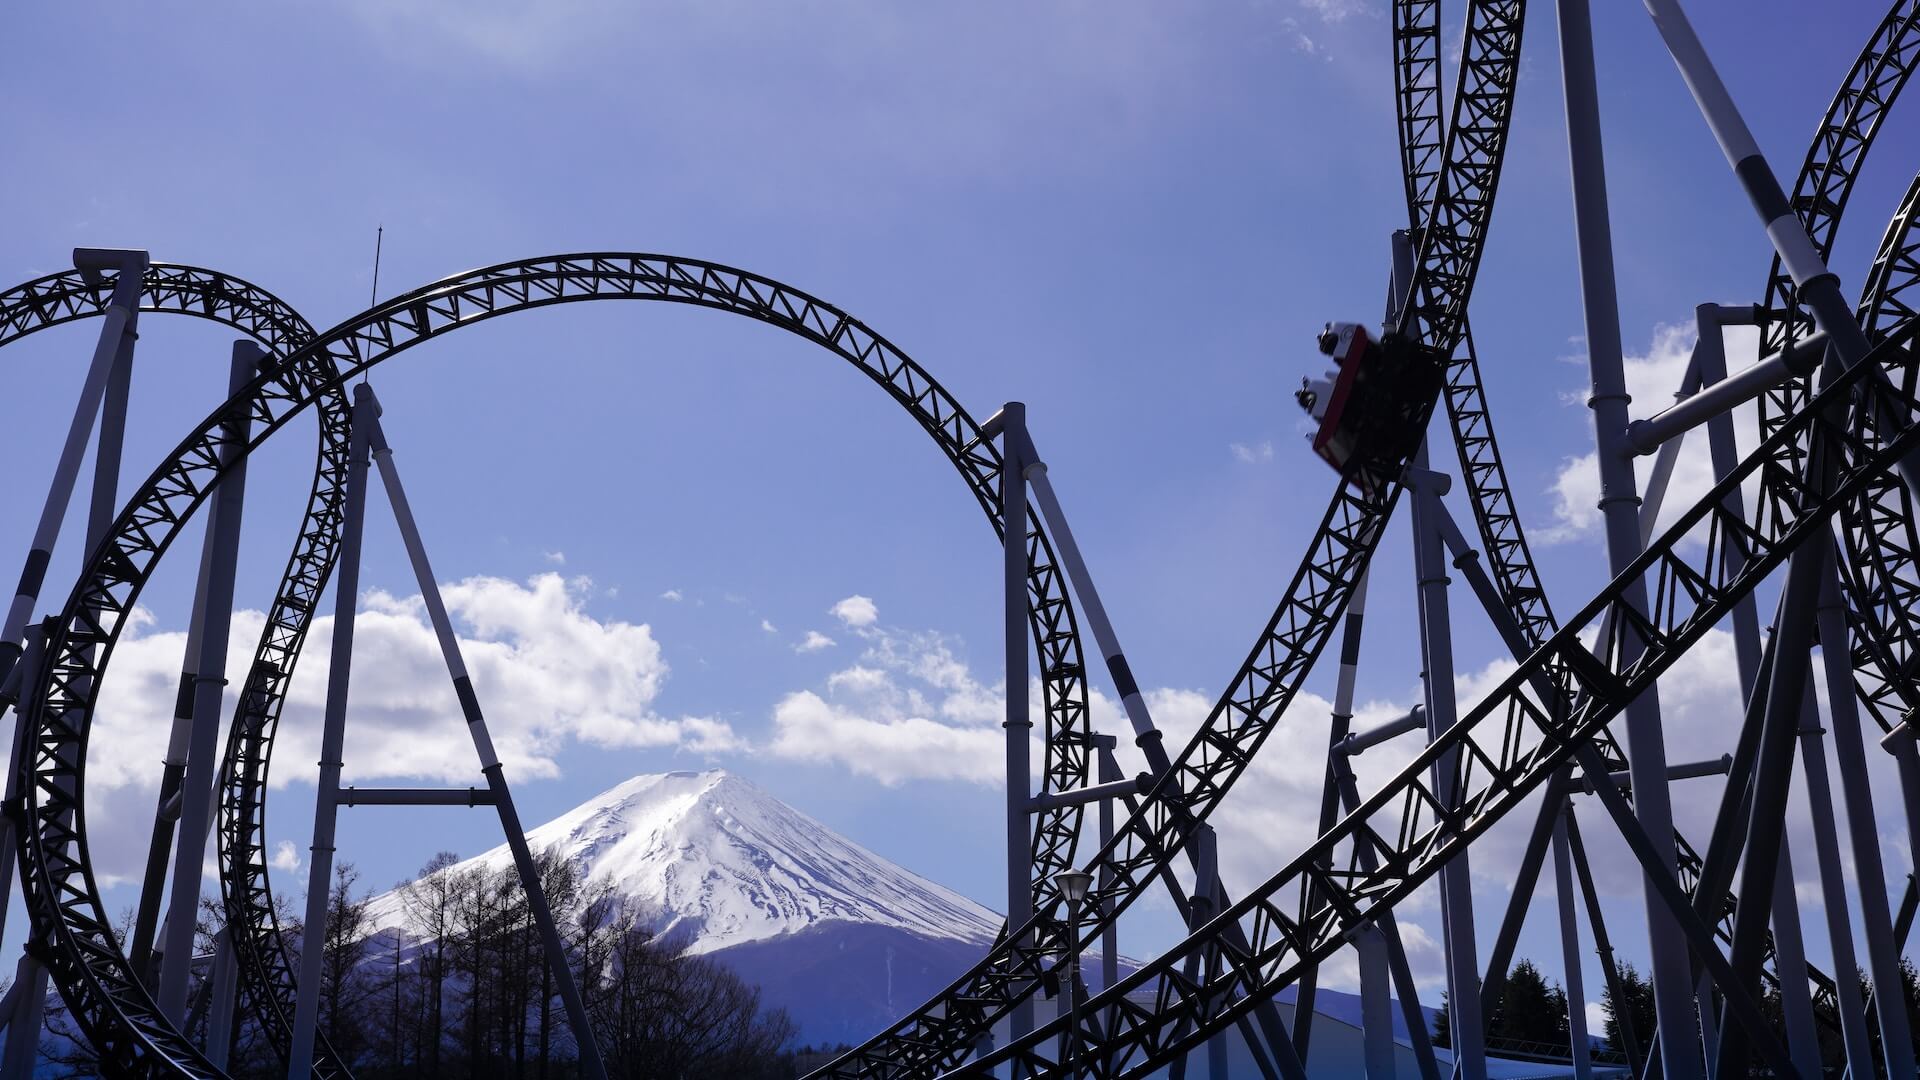 A roller coaster at an amusement park